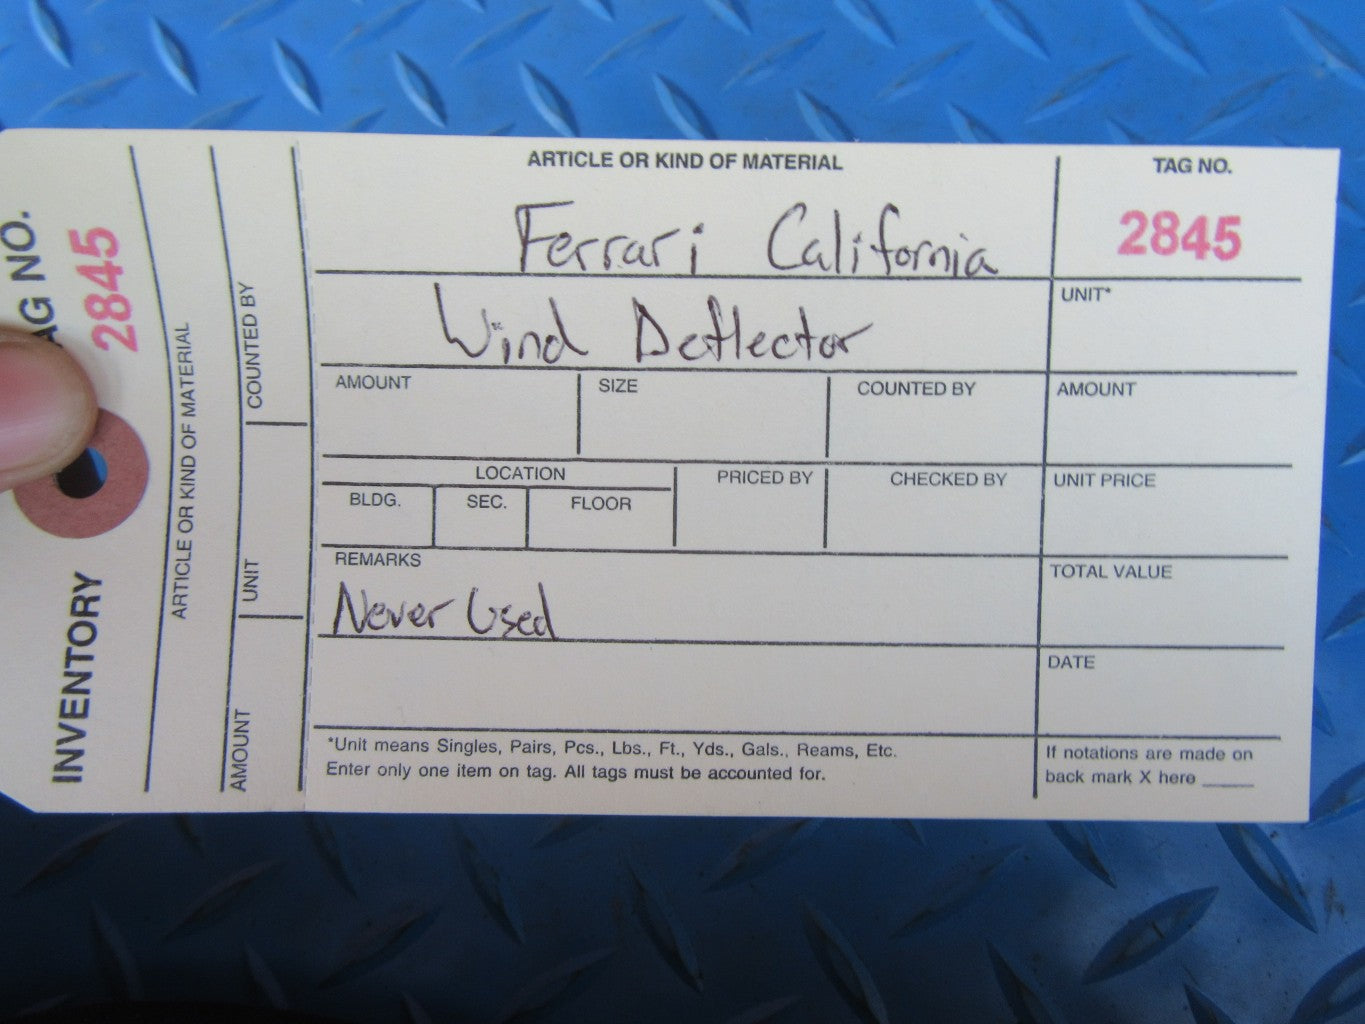 Ferrari California wind deflectors #2845